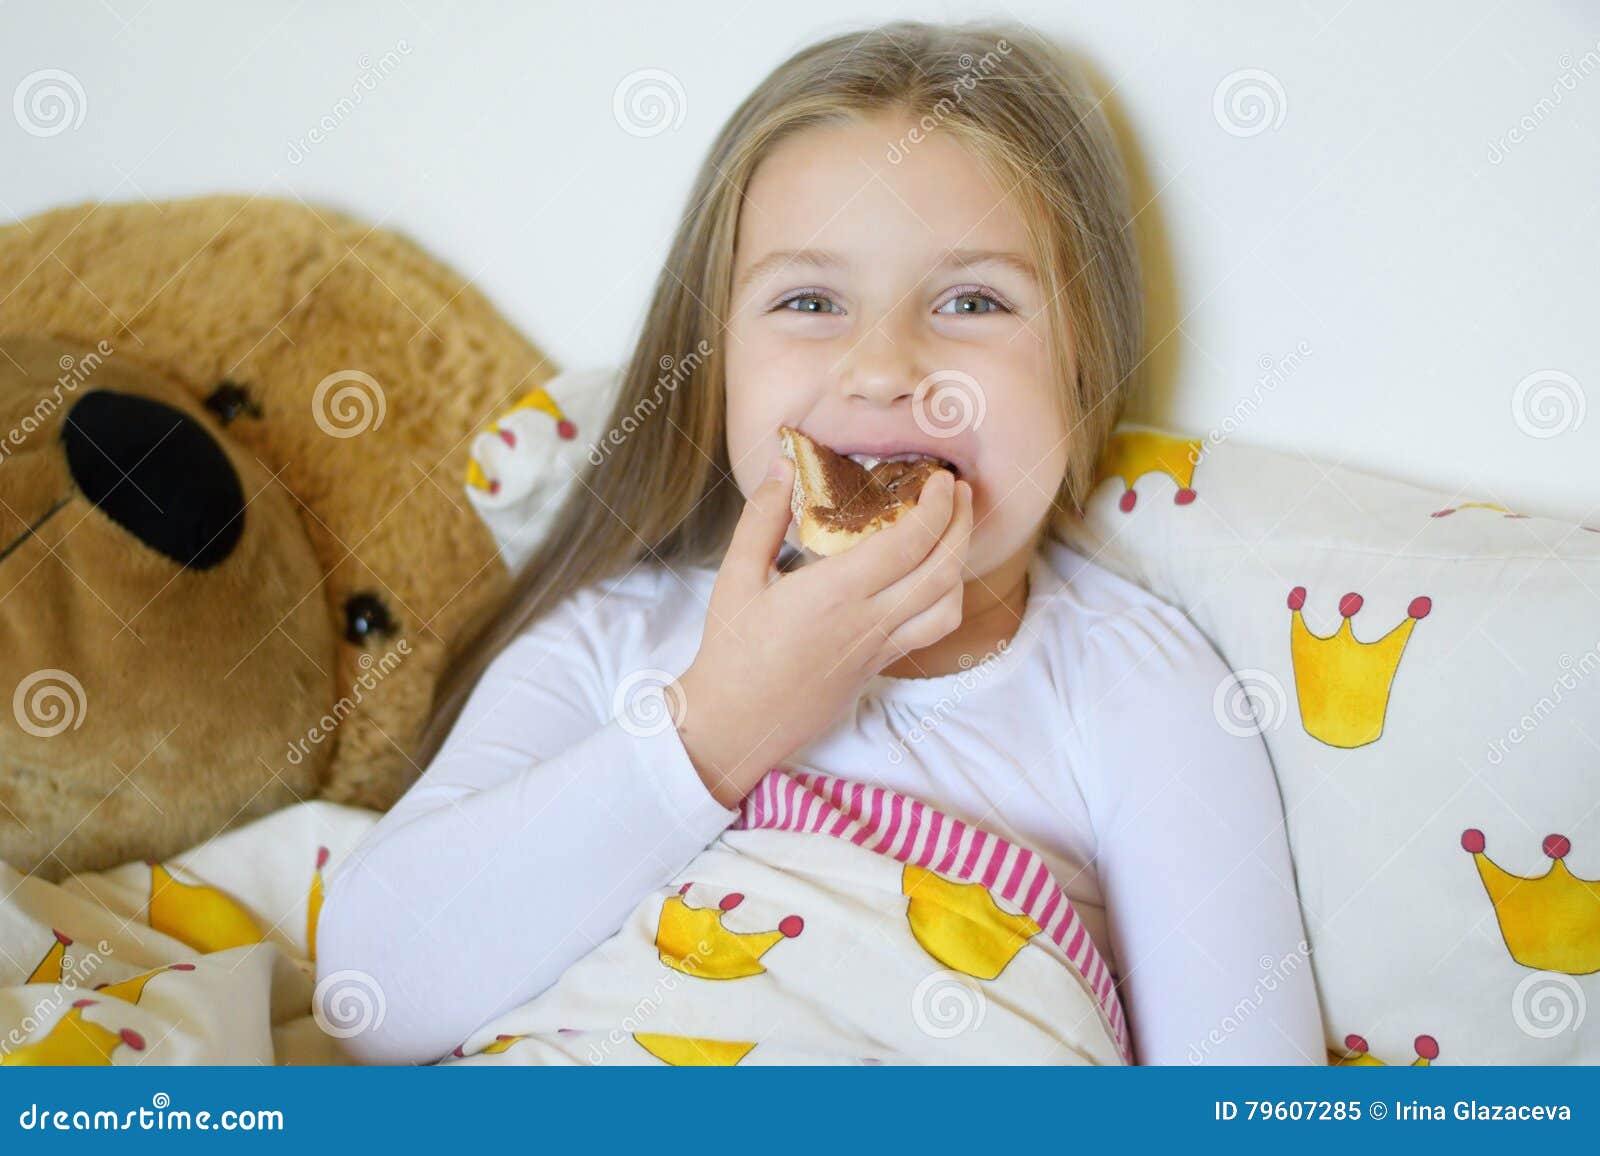 吃食物的人 暖色系 甜甜圈 美少女, 吃東西的人, 暖色調, 甜甜圈素材圖案，PSD和PNG圖片免費下載